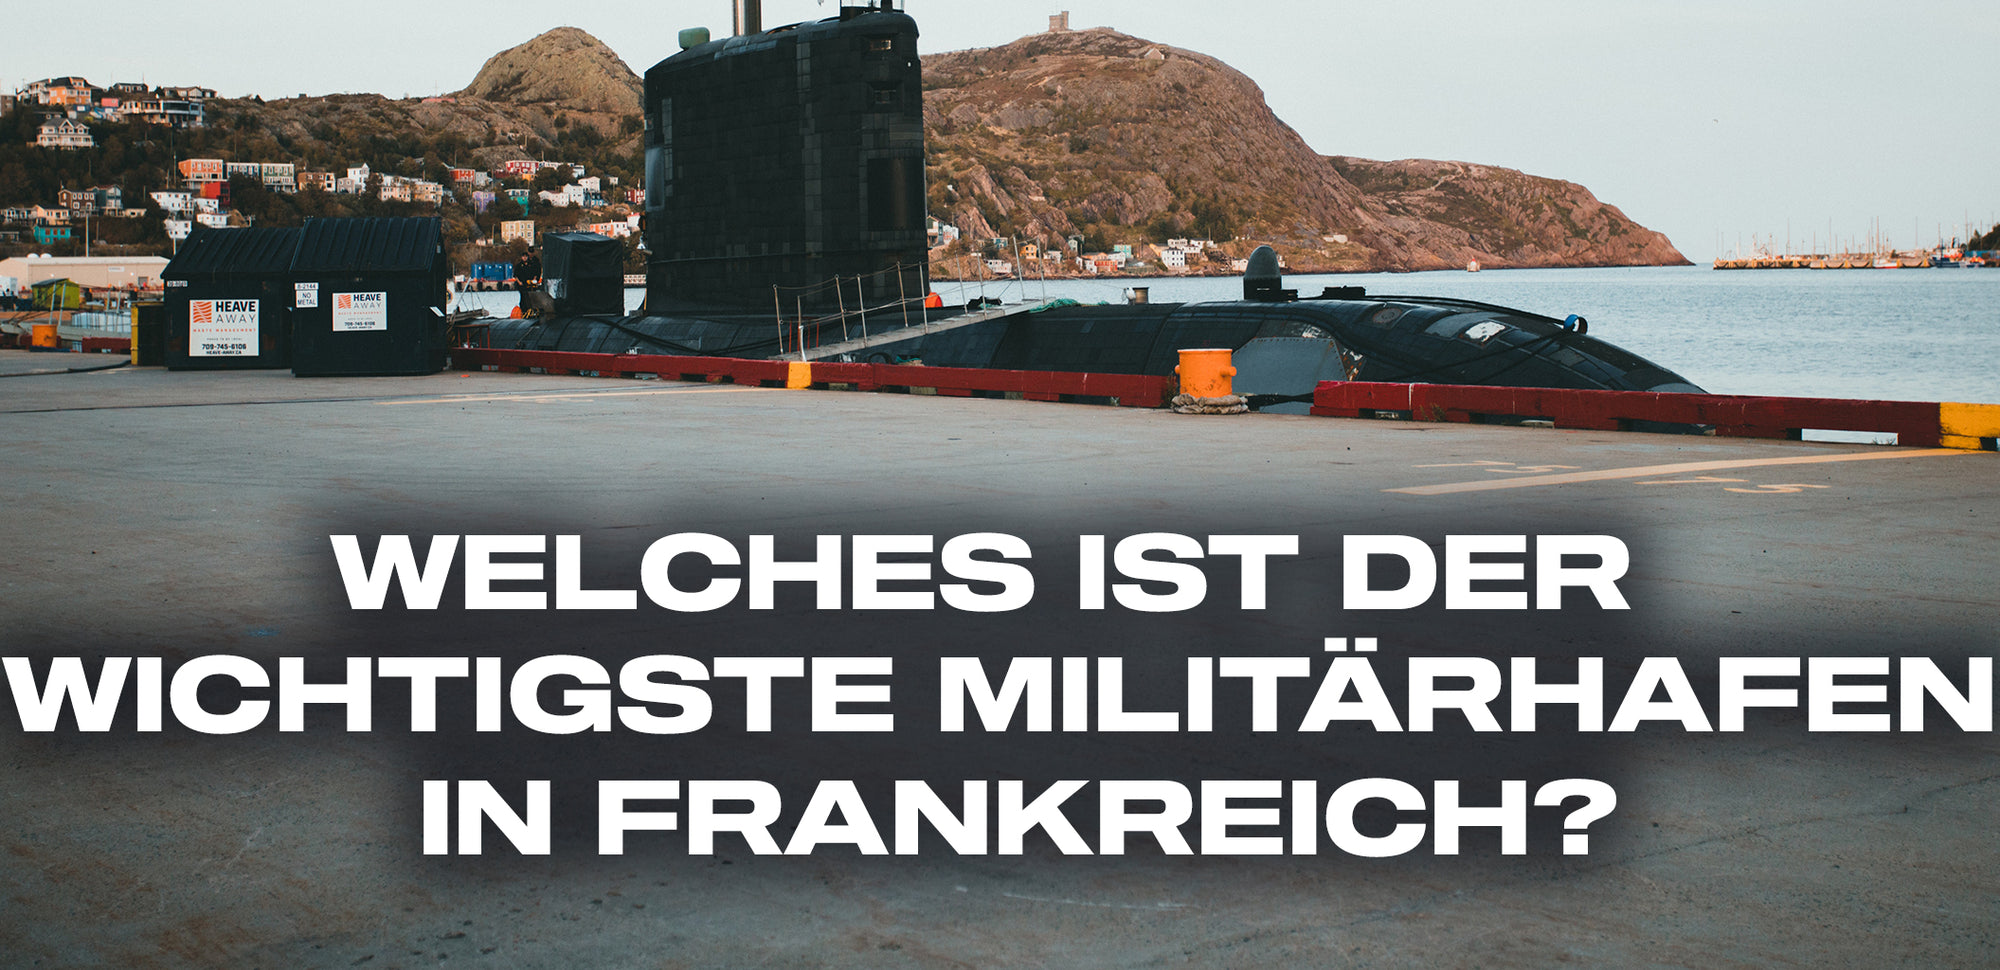 welches ist der wichtigste militarhafen in frankreich